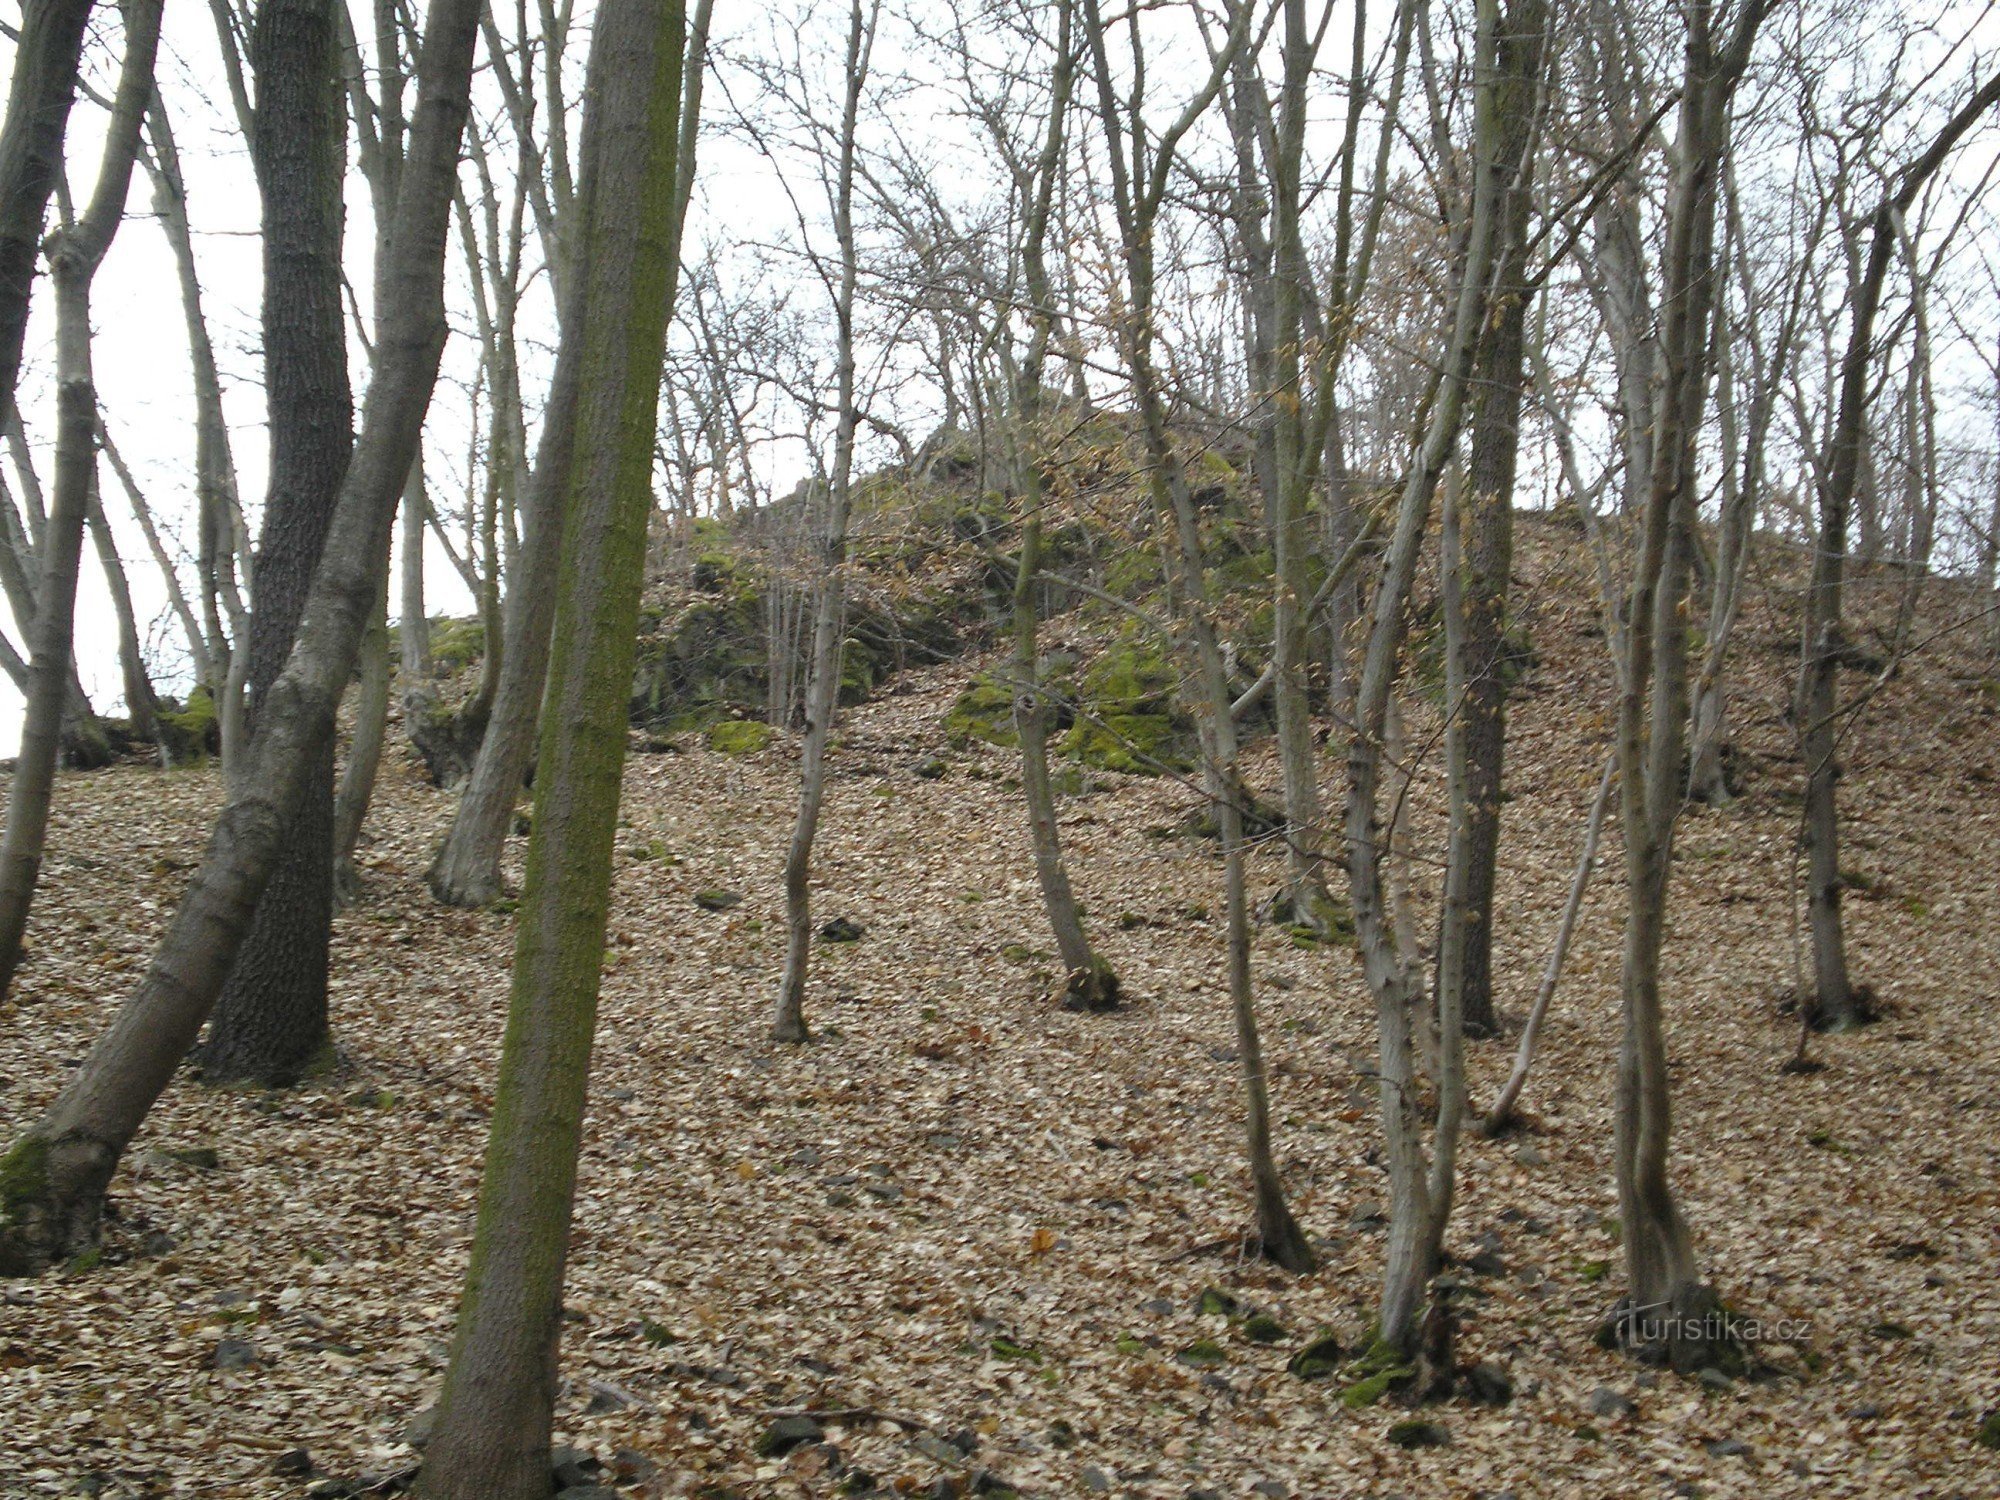 O promontório onde ficava o Castelo de Karlík